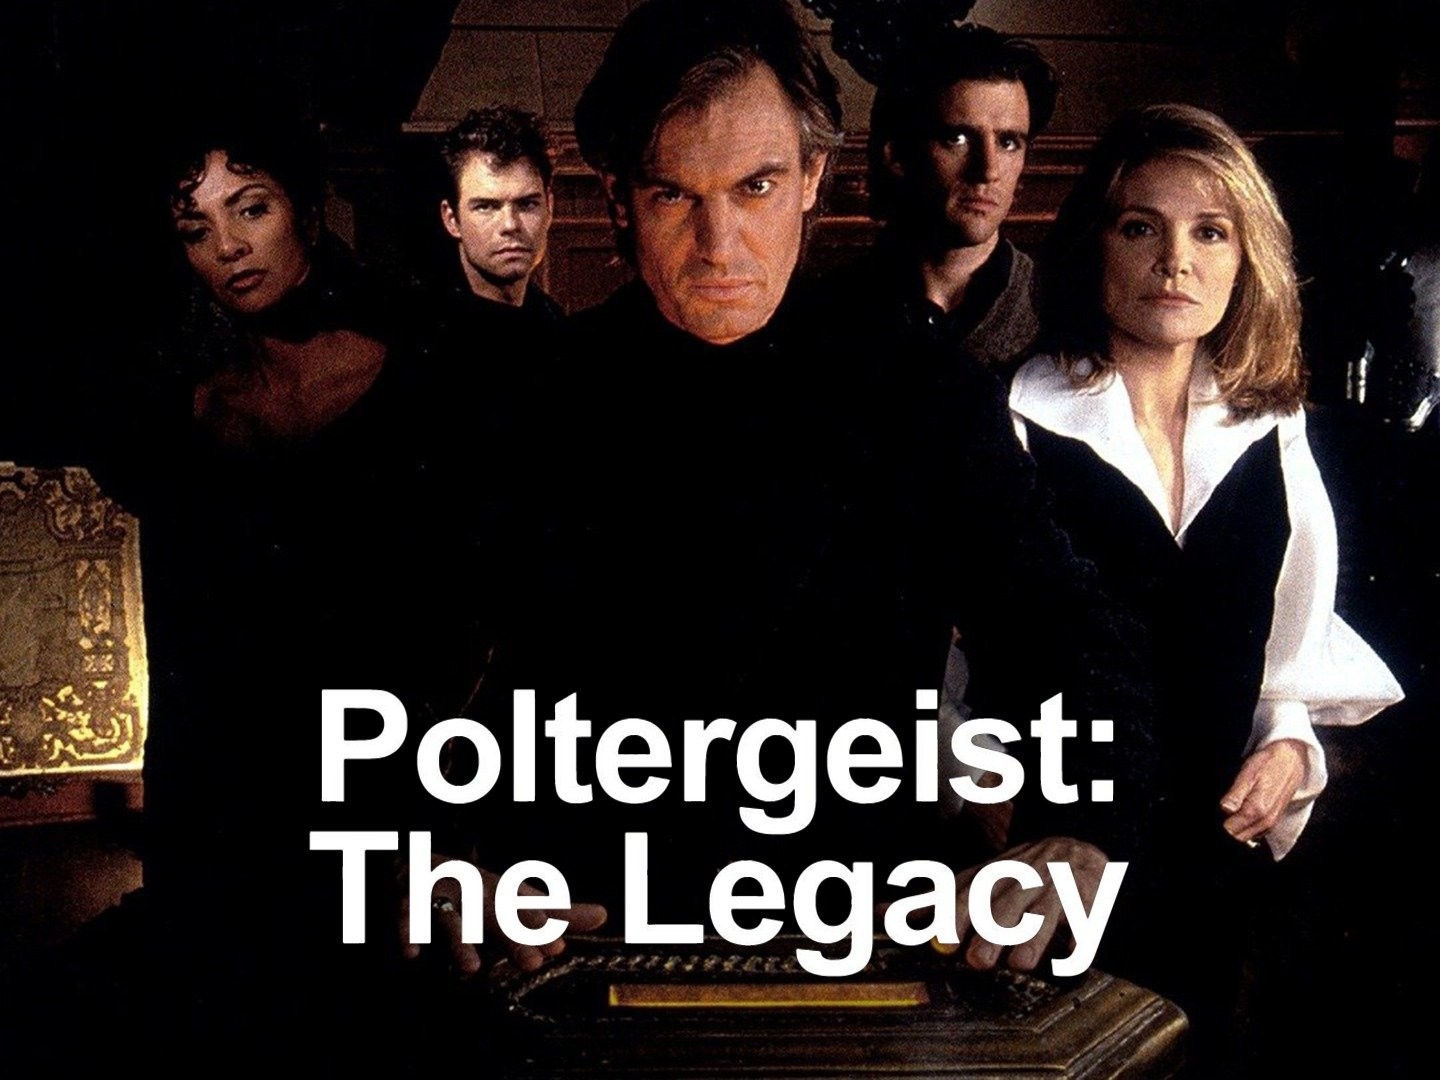 Poltergeist the legacy